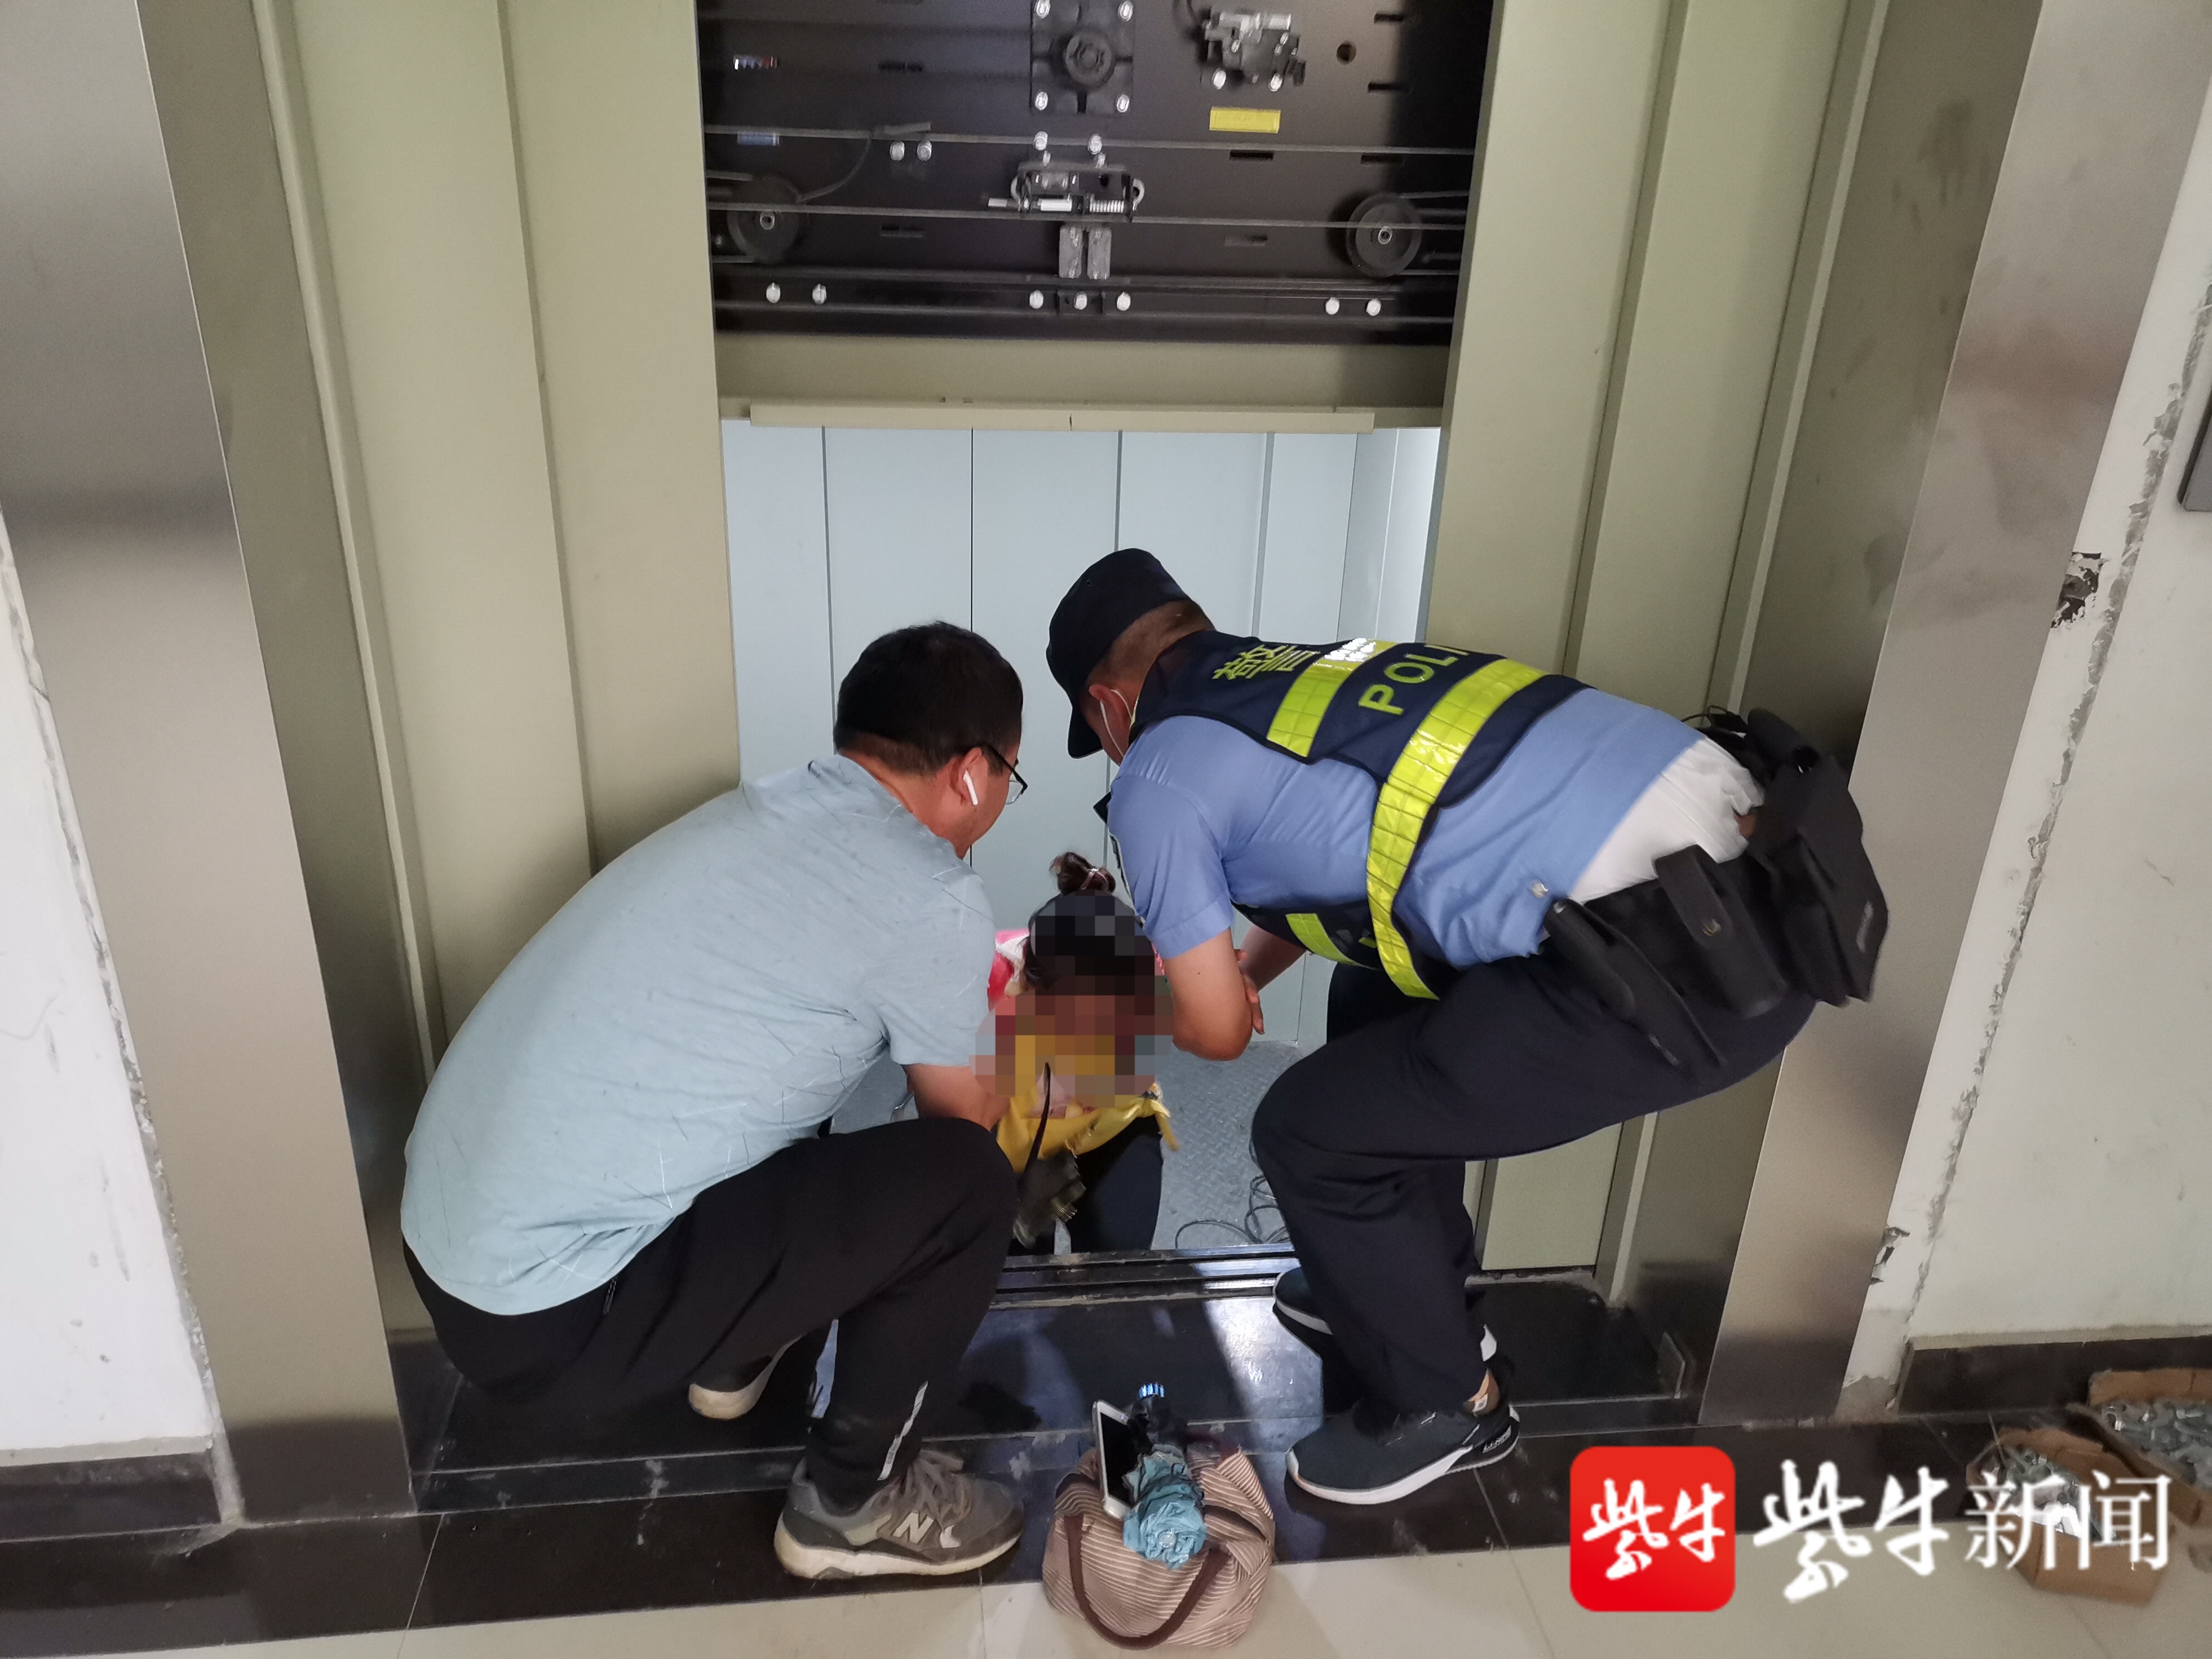 电梯故障导致群众被困,民警及时施救助脱险